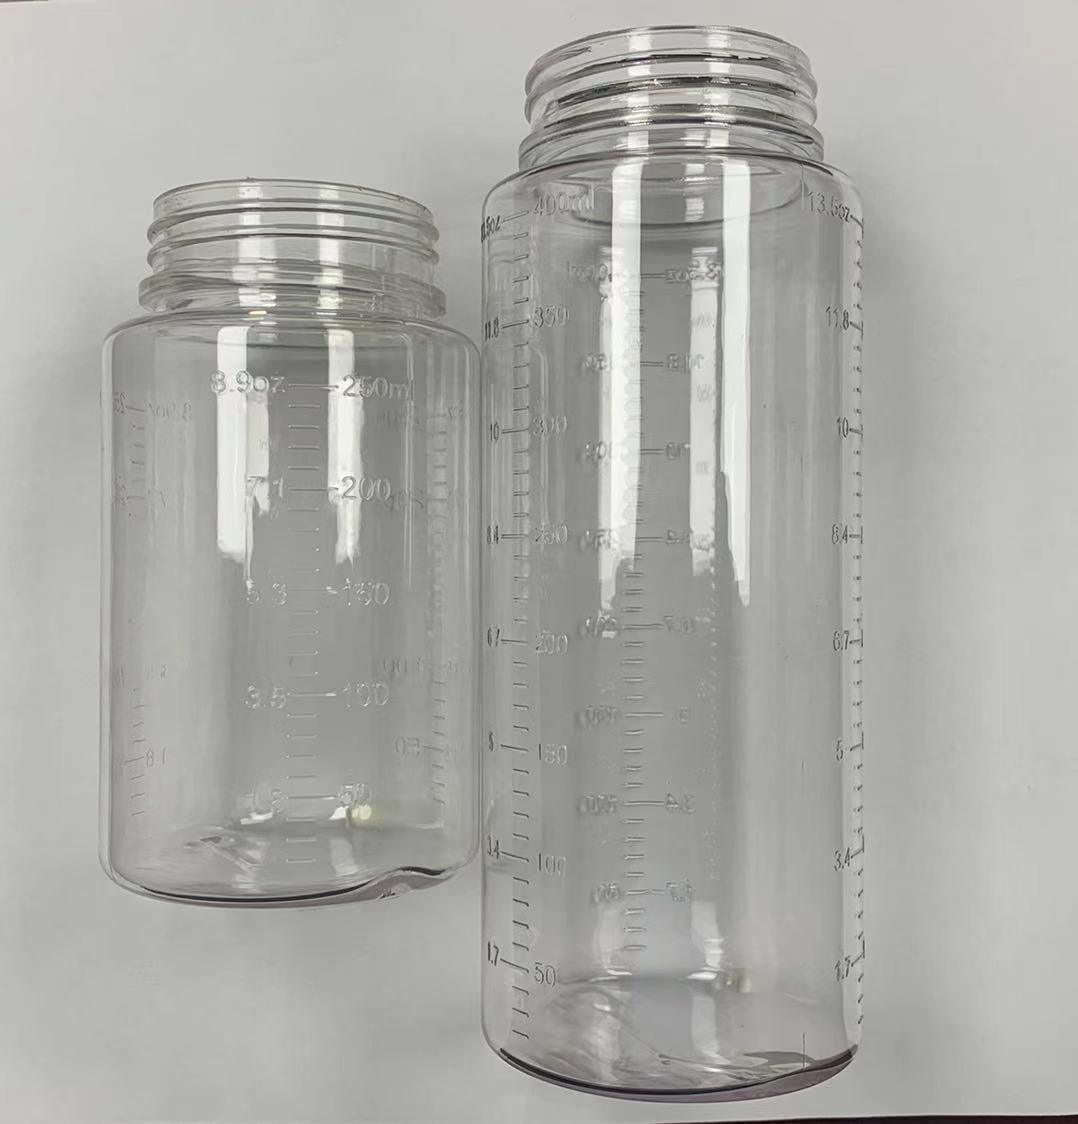 Oil bottles for Airtek AC-Dual machine - airtekproducts